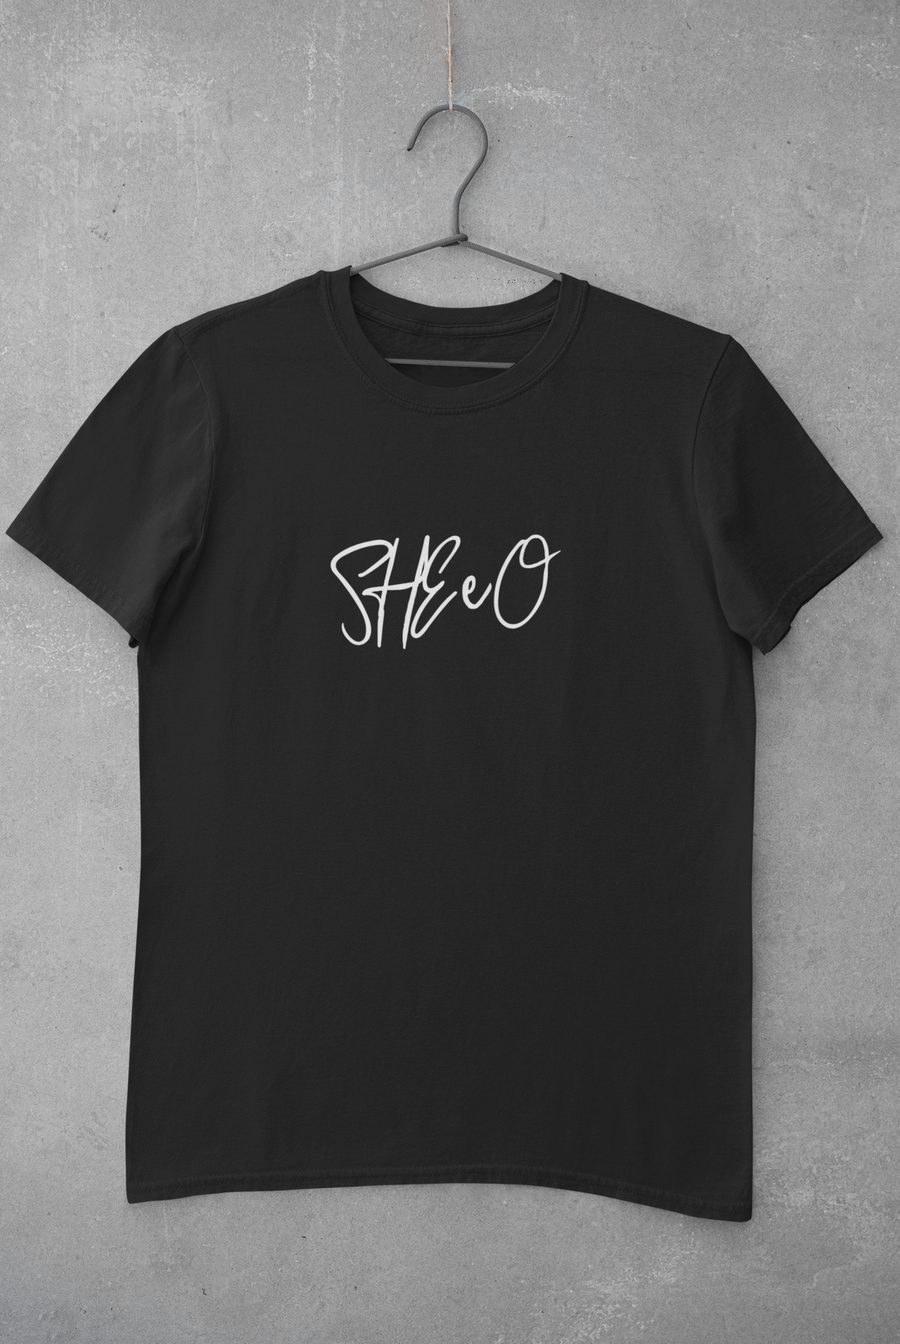 "SHEeO" T-shirt